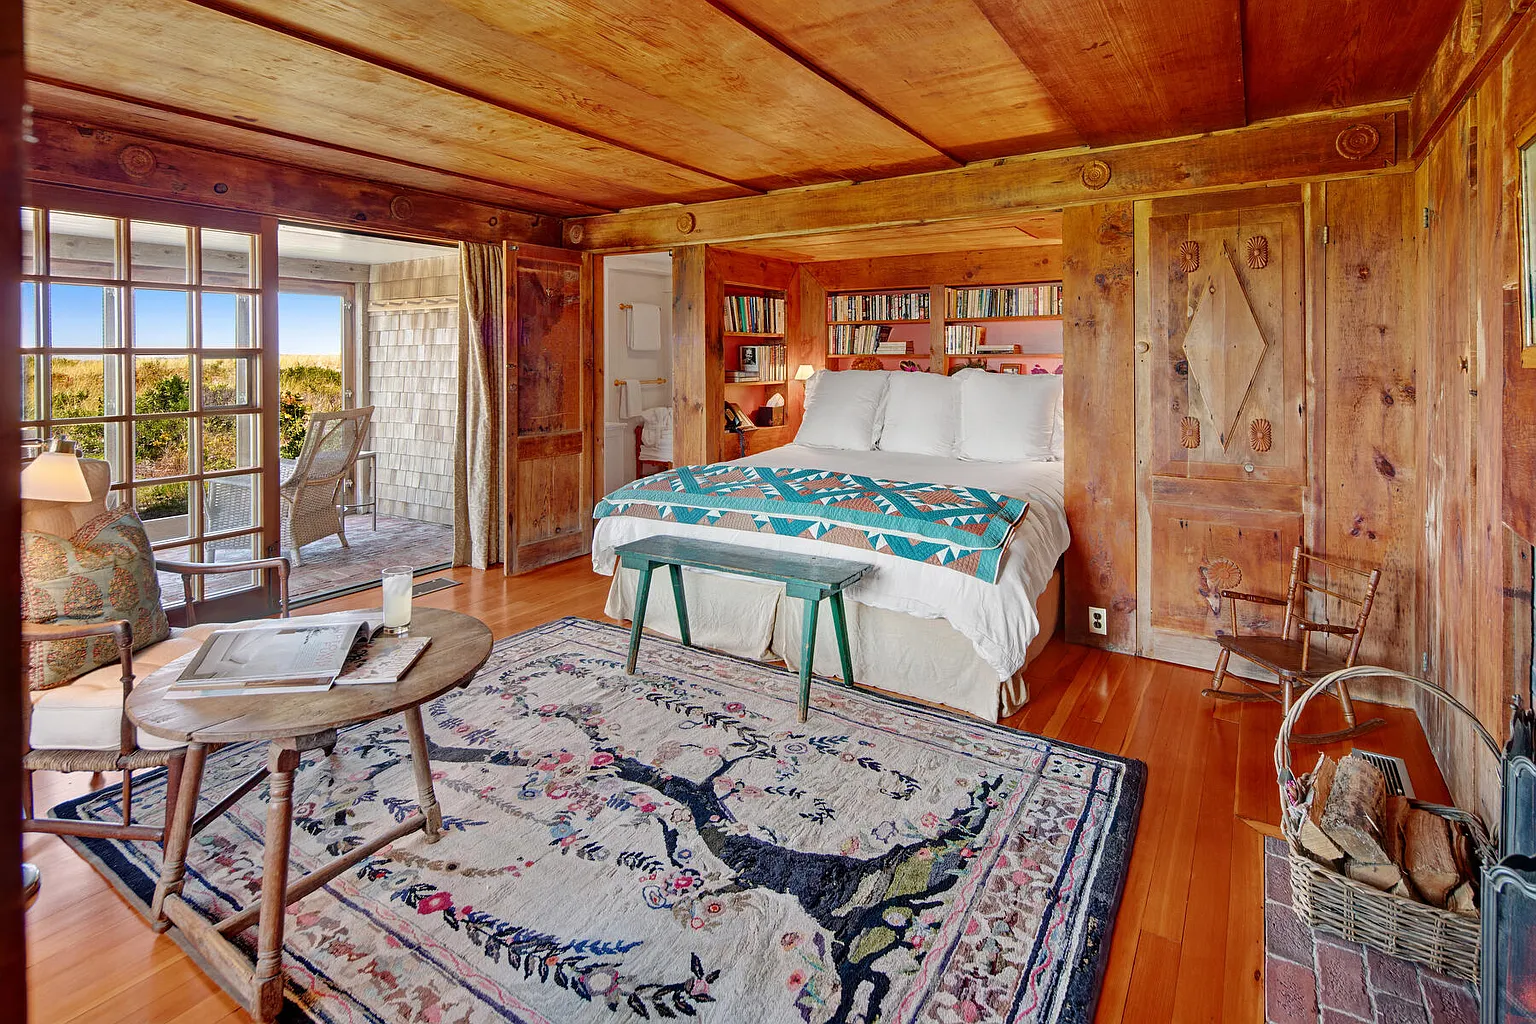 Bedroom with wood walls, and sliding glass door overlooking waterfront in Martha's Vineyard.